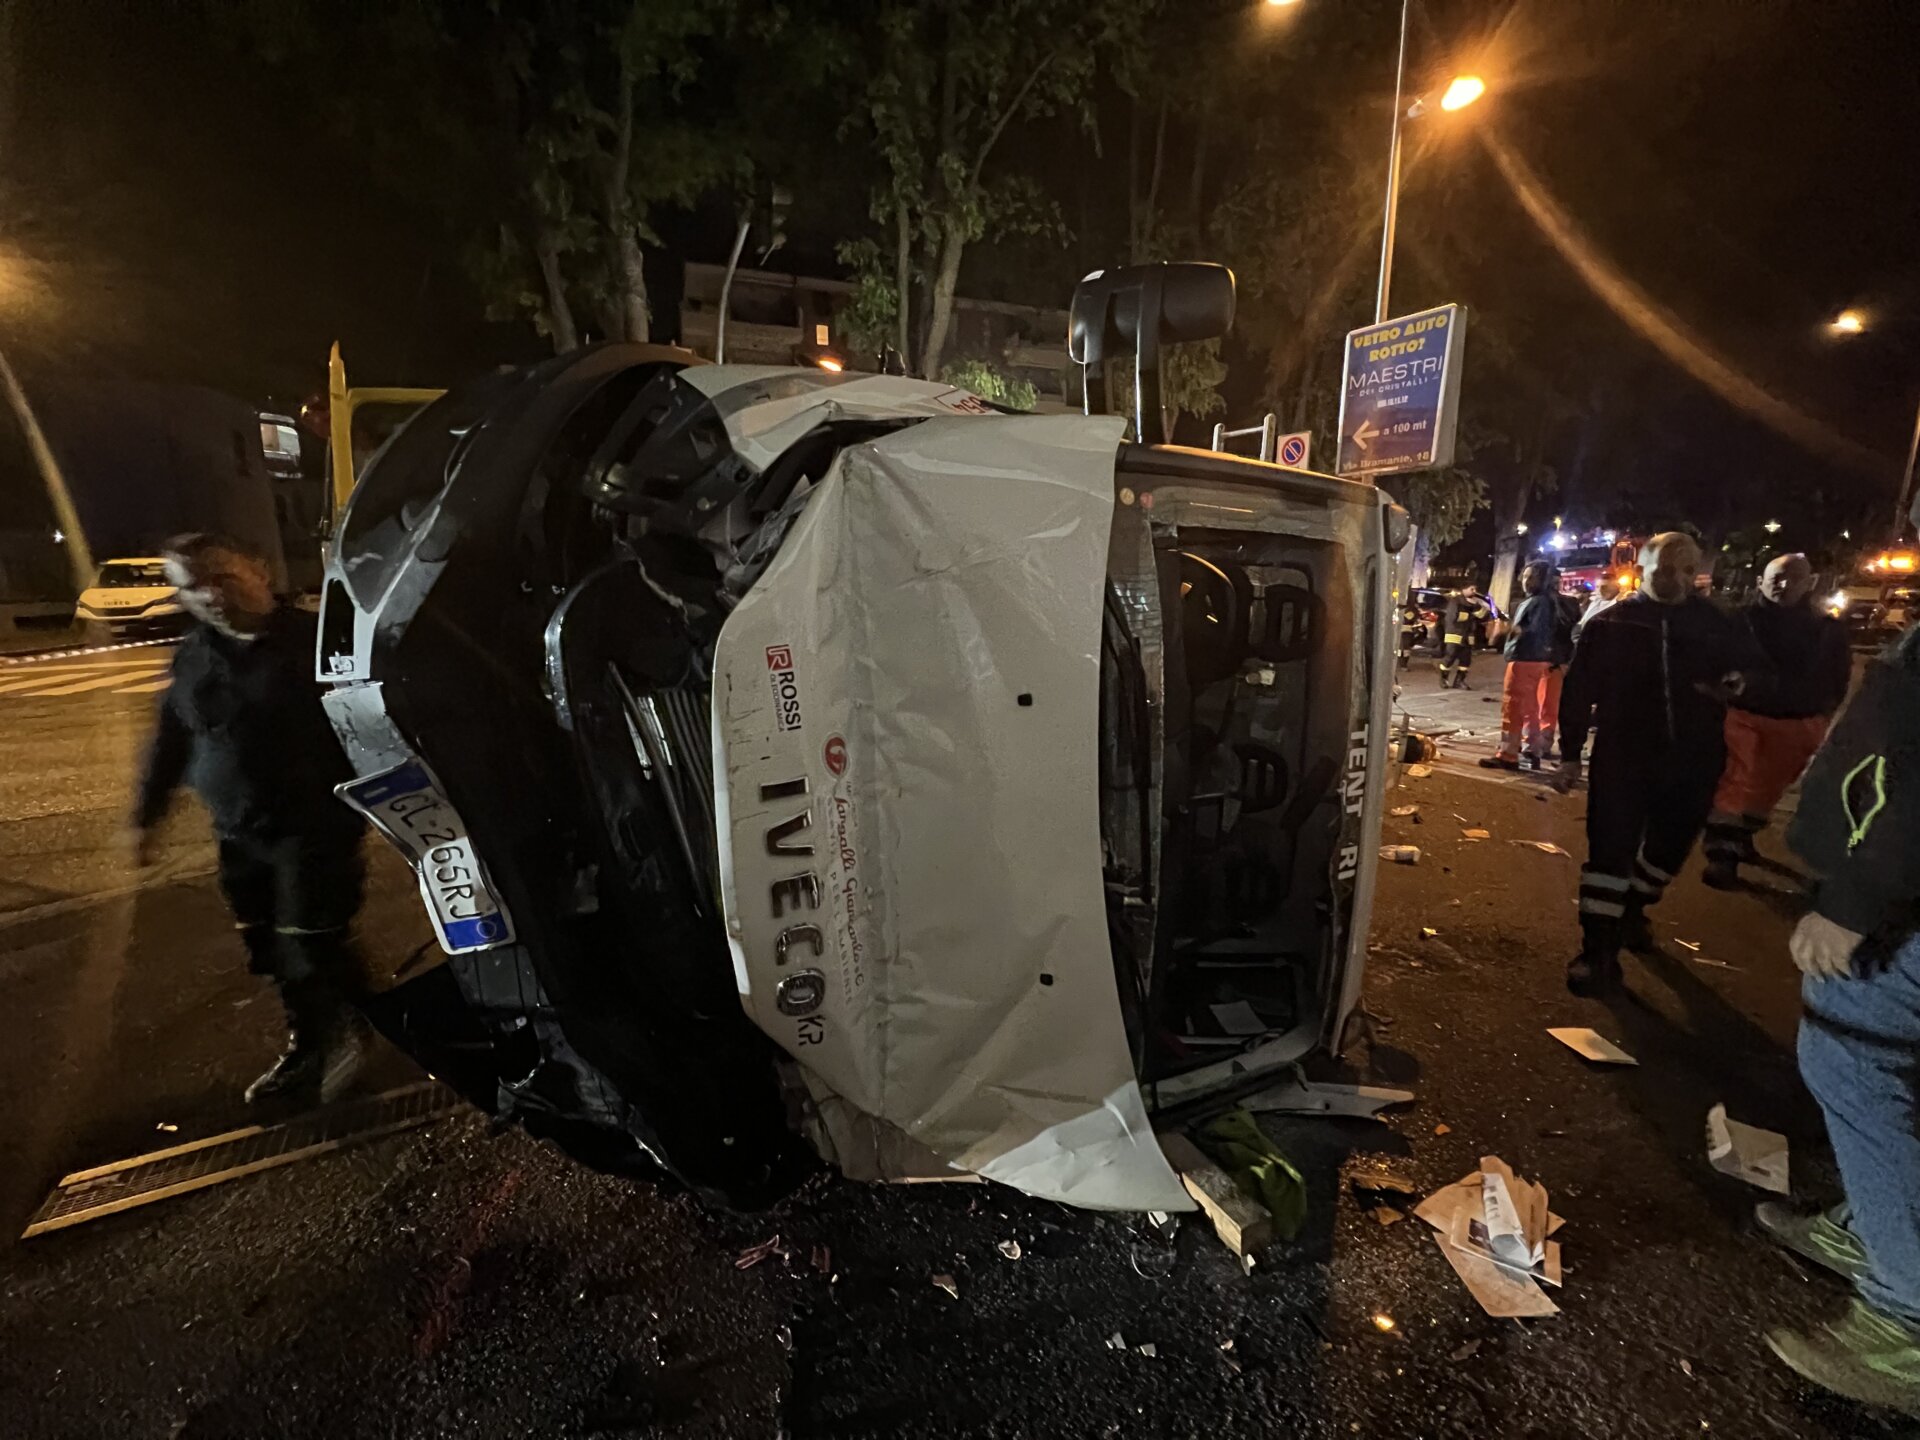 Monza incidente via Buonarroti pompieri vigili del fuoco ragazza 20 anni grave auto contro camion rifiuti